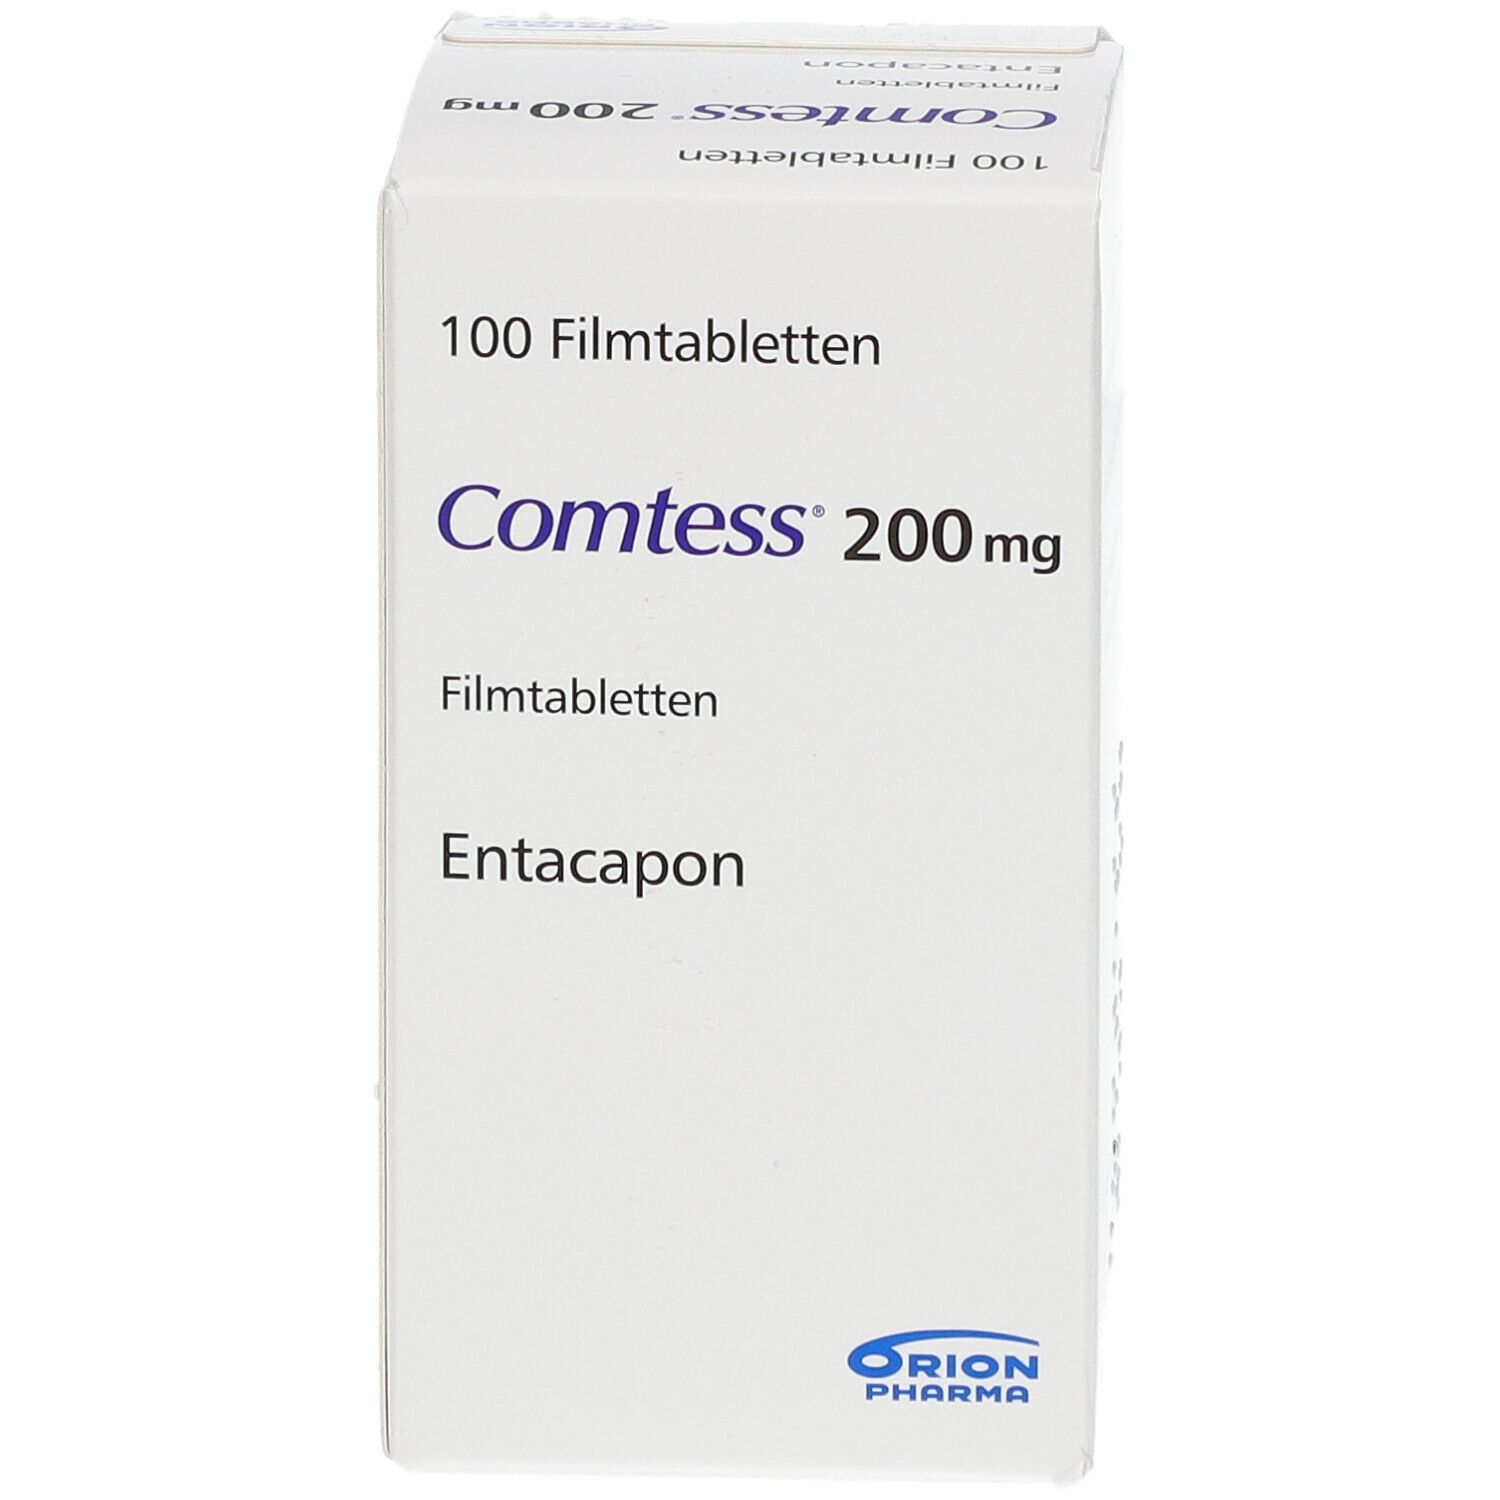 Comtess® 200 mg